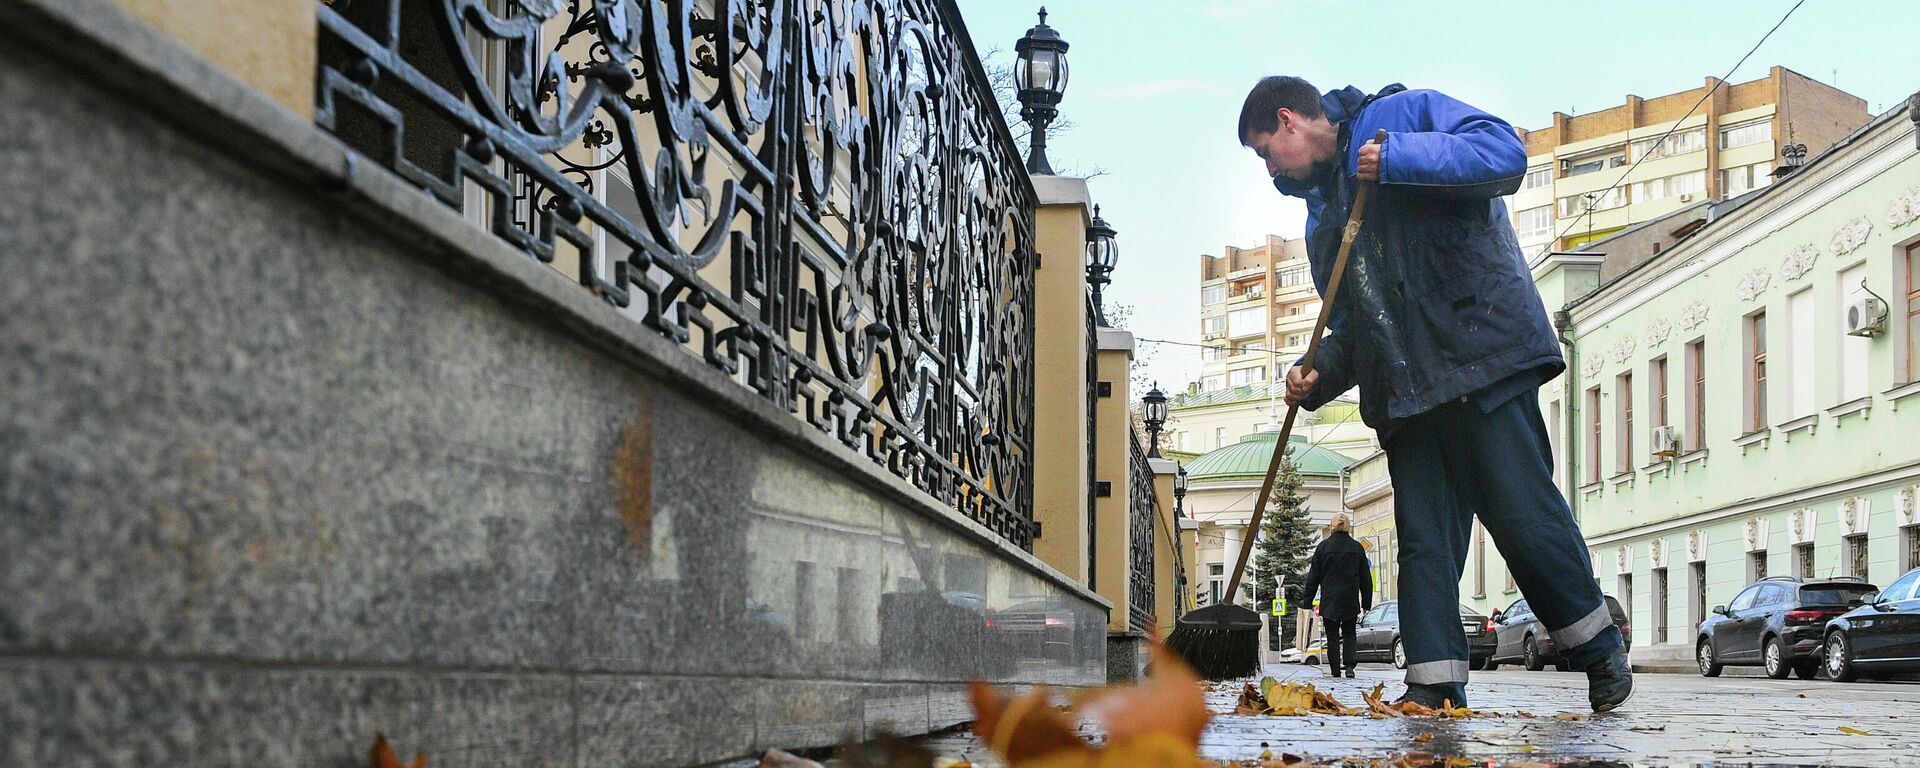 Сотрудник коммунальной службы подметает листья на улице в Москве. - Sputnik Тоҷикистон, 1920, 25.11.2021